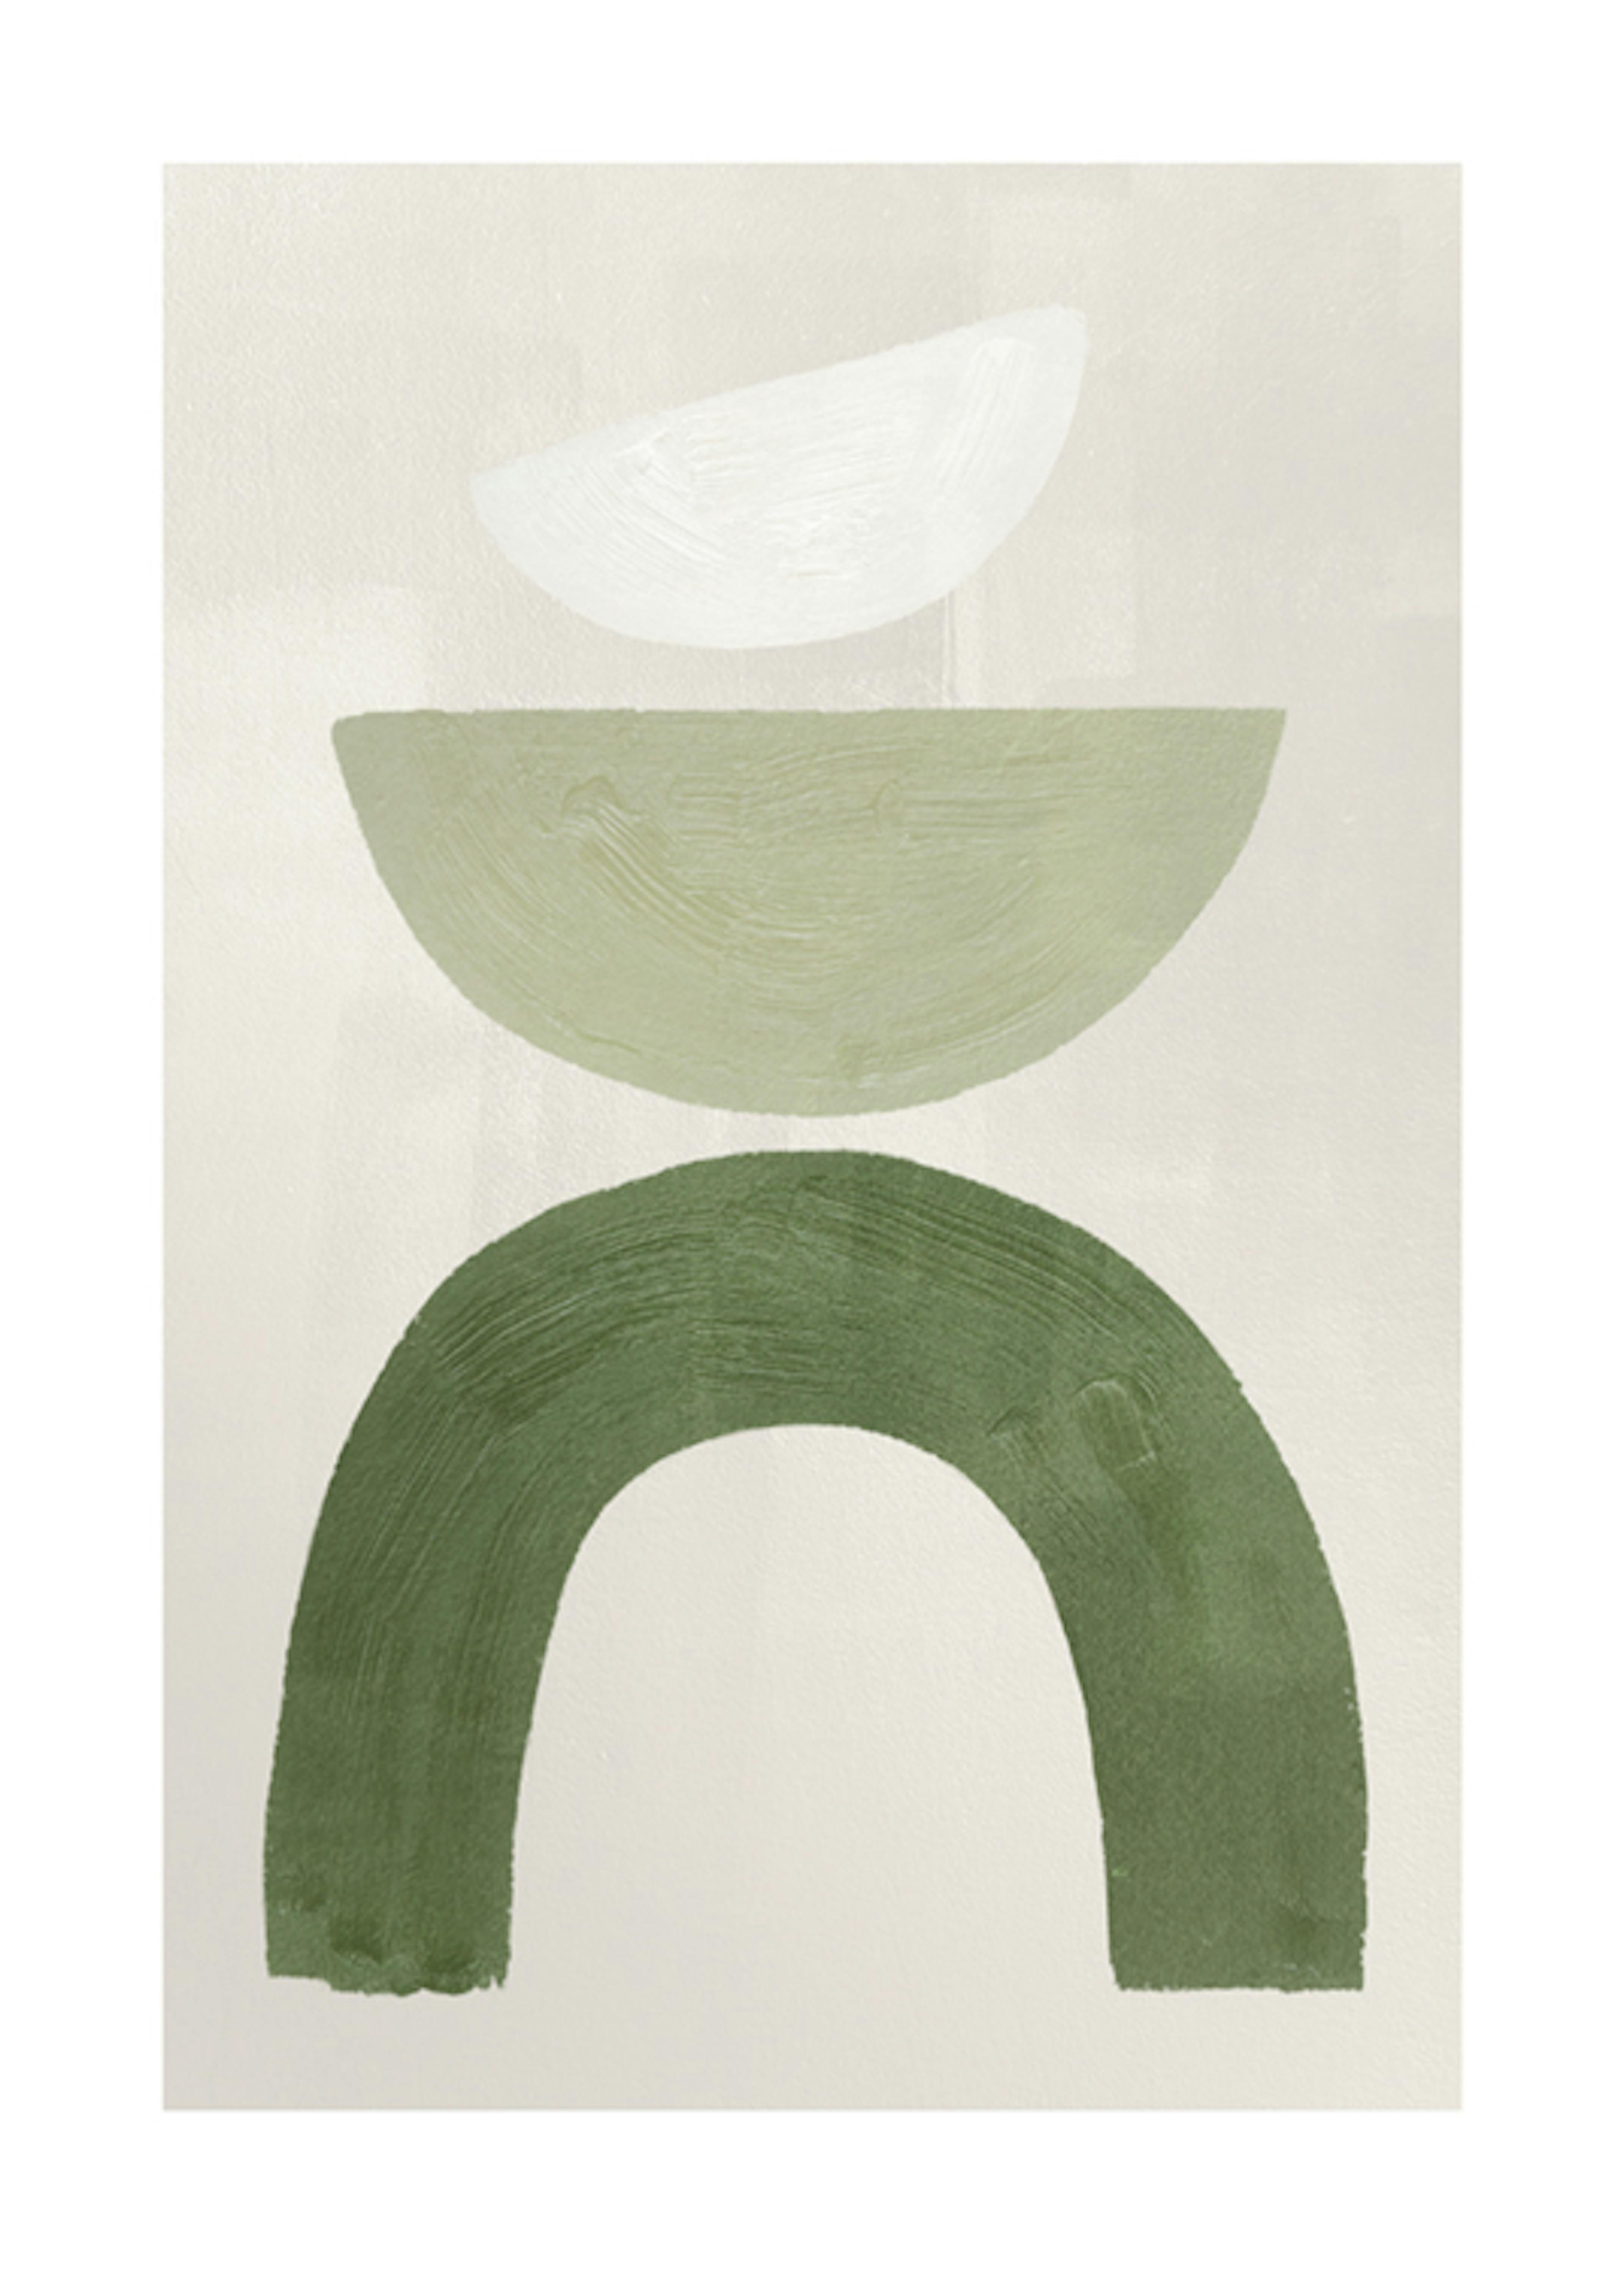 ملصق رسومي رقم 1 بأشكال خضراء 0